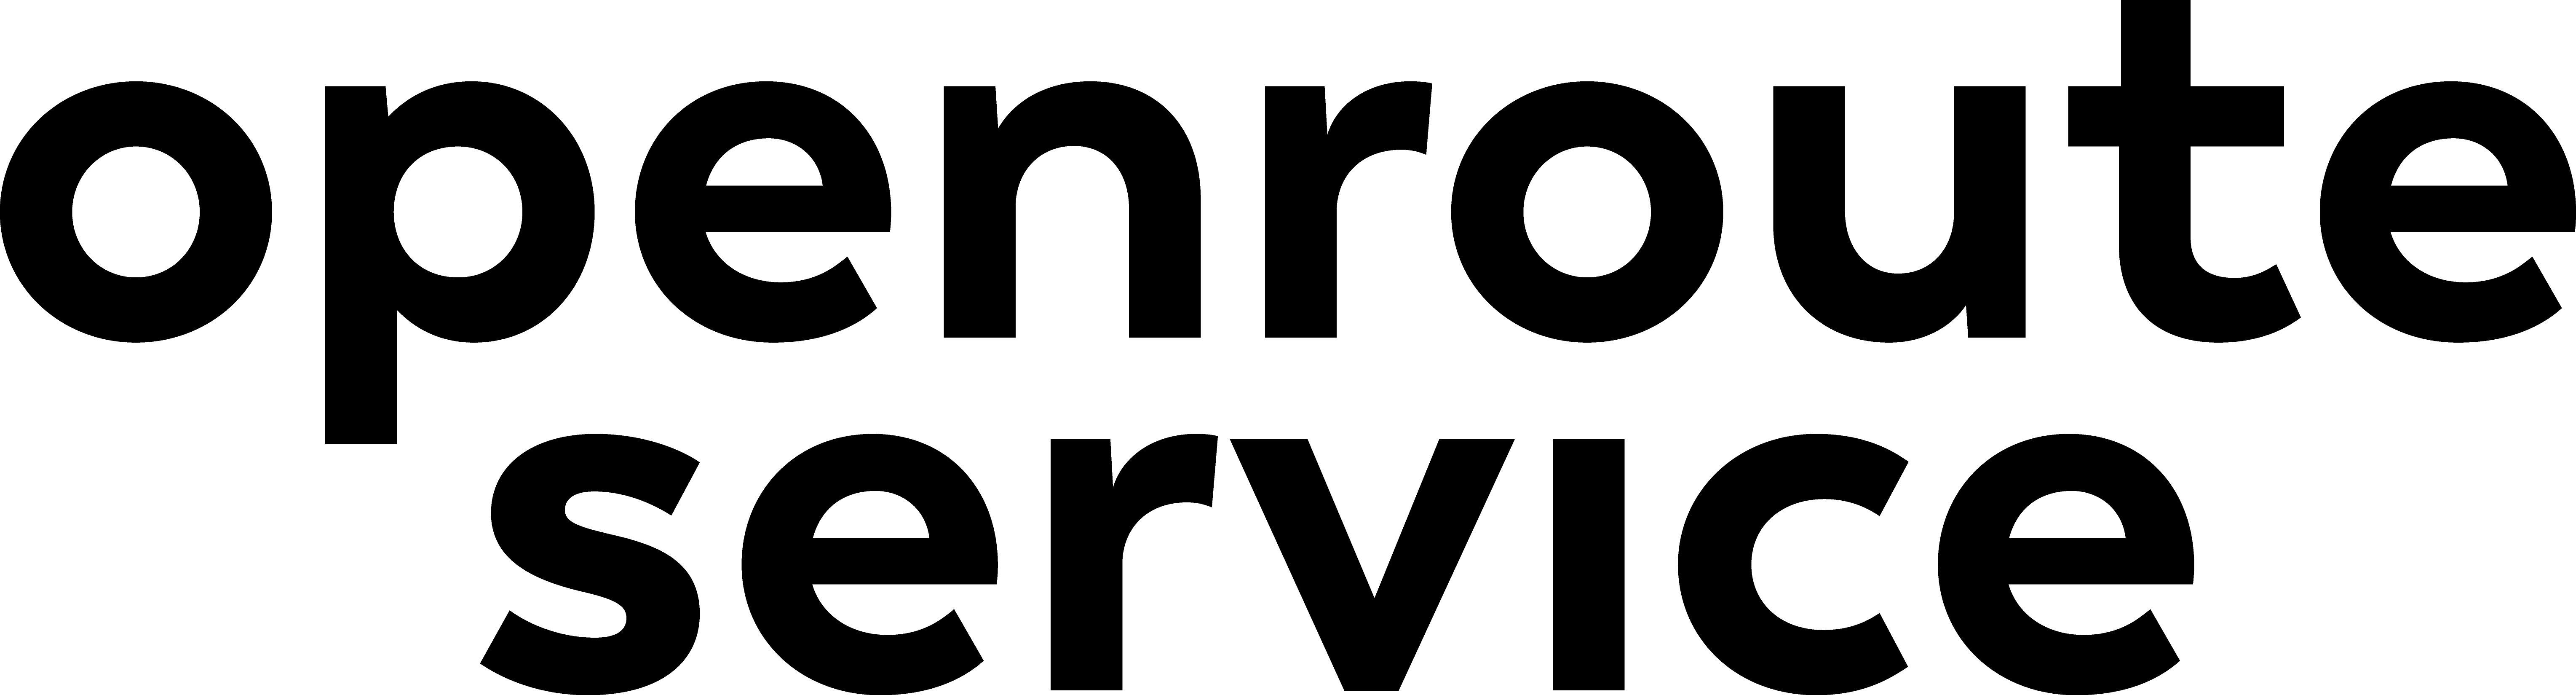 openrouteservice logo